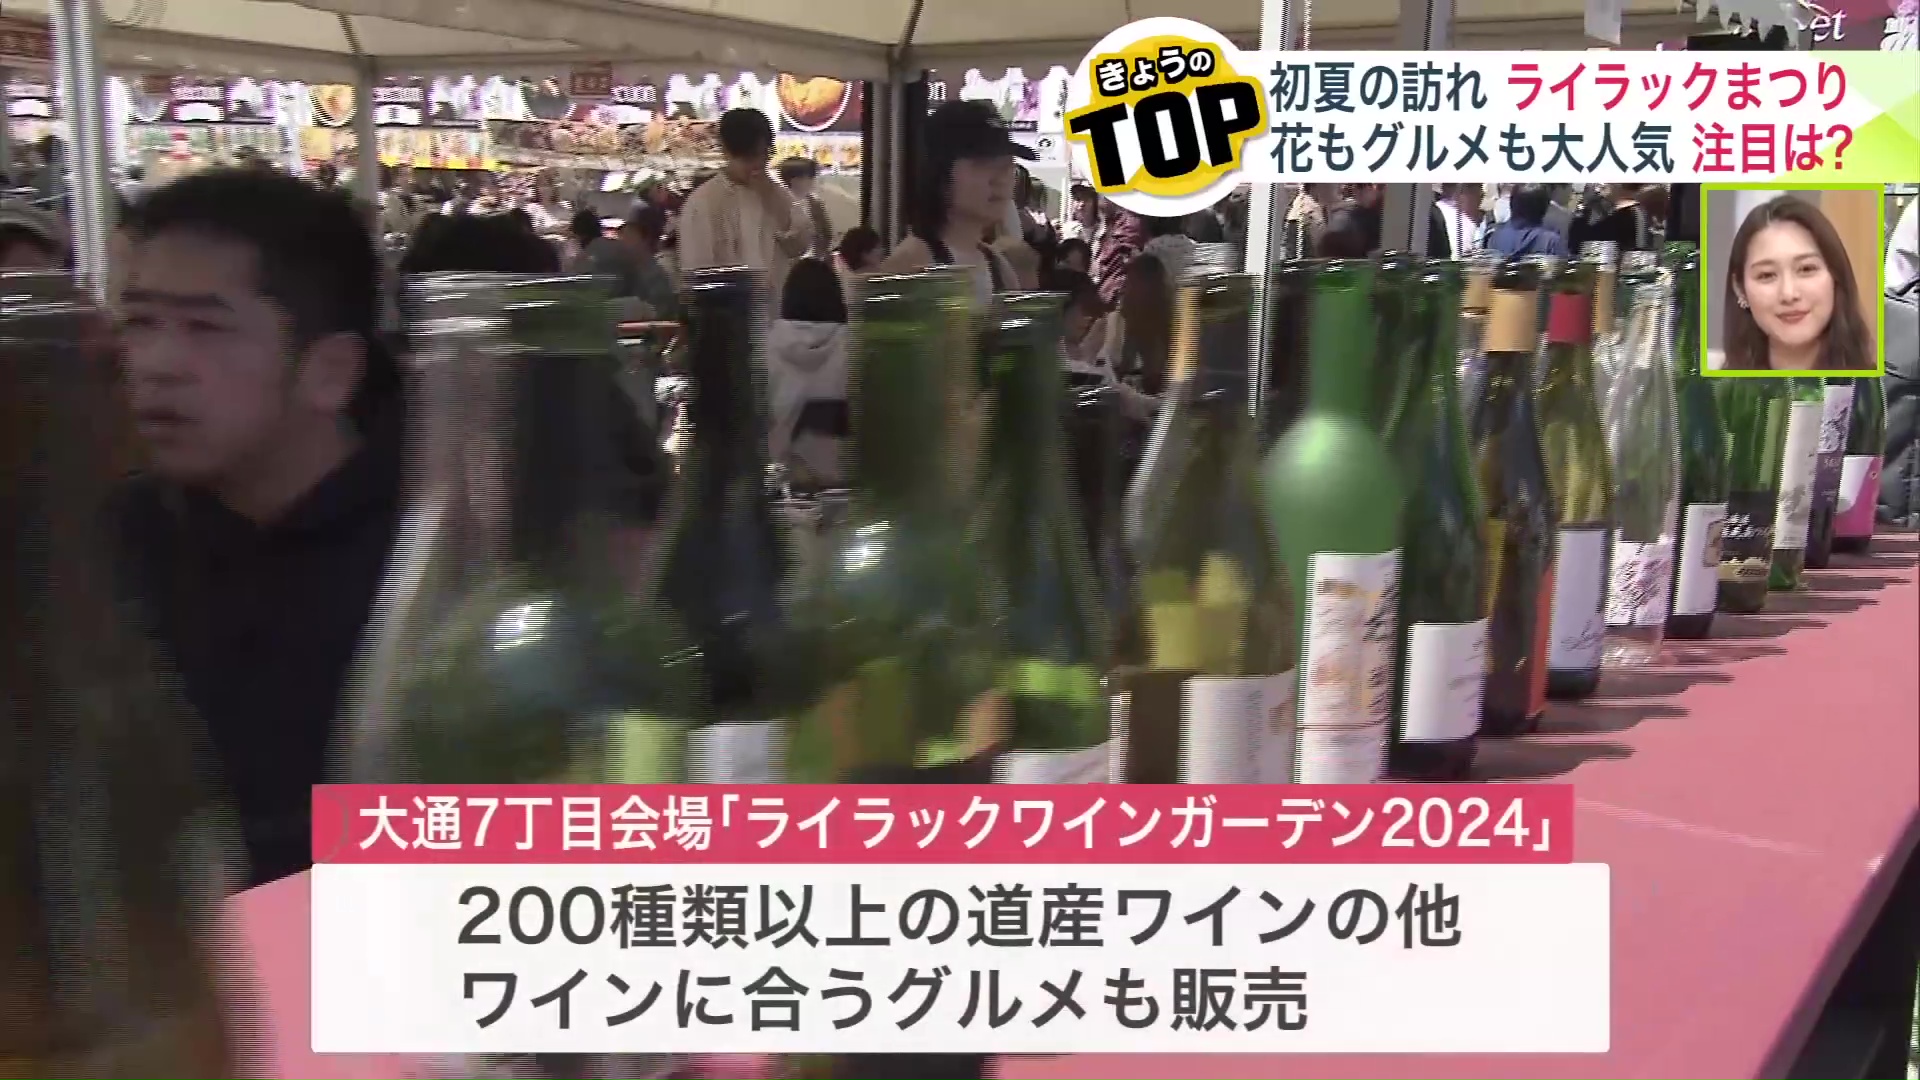 200種類以上の北海道産ワインが楽しめる